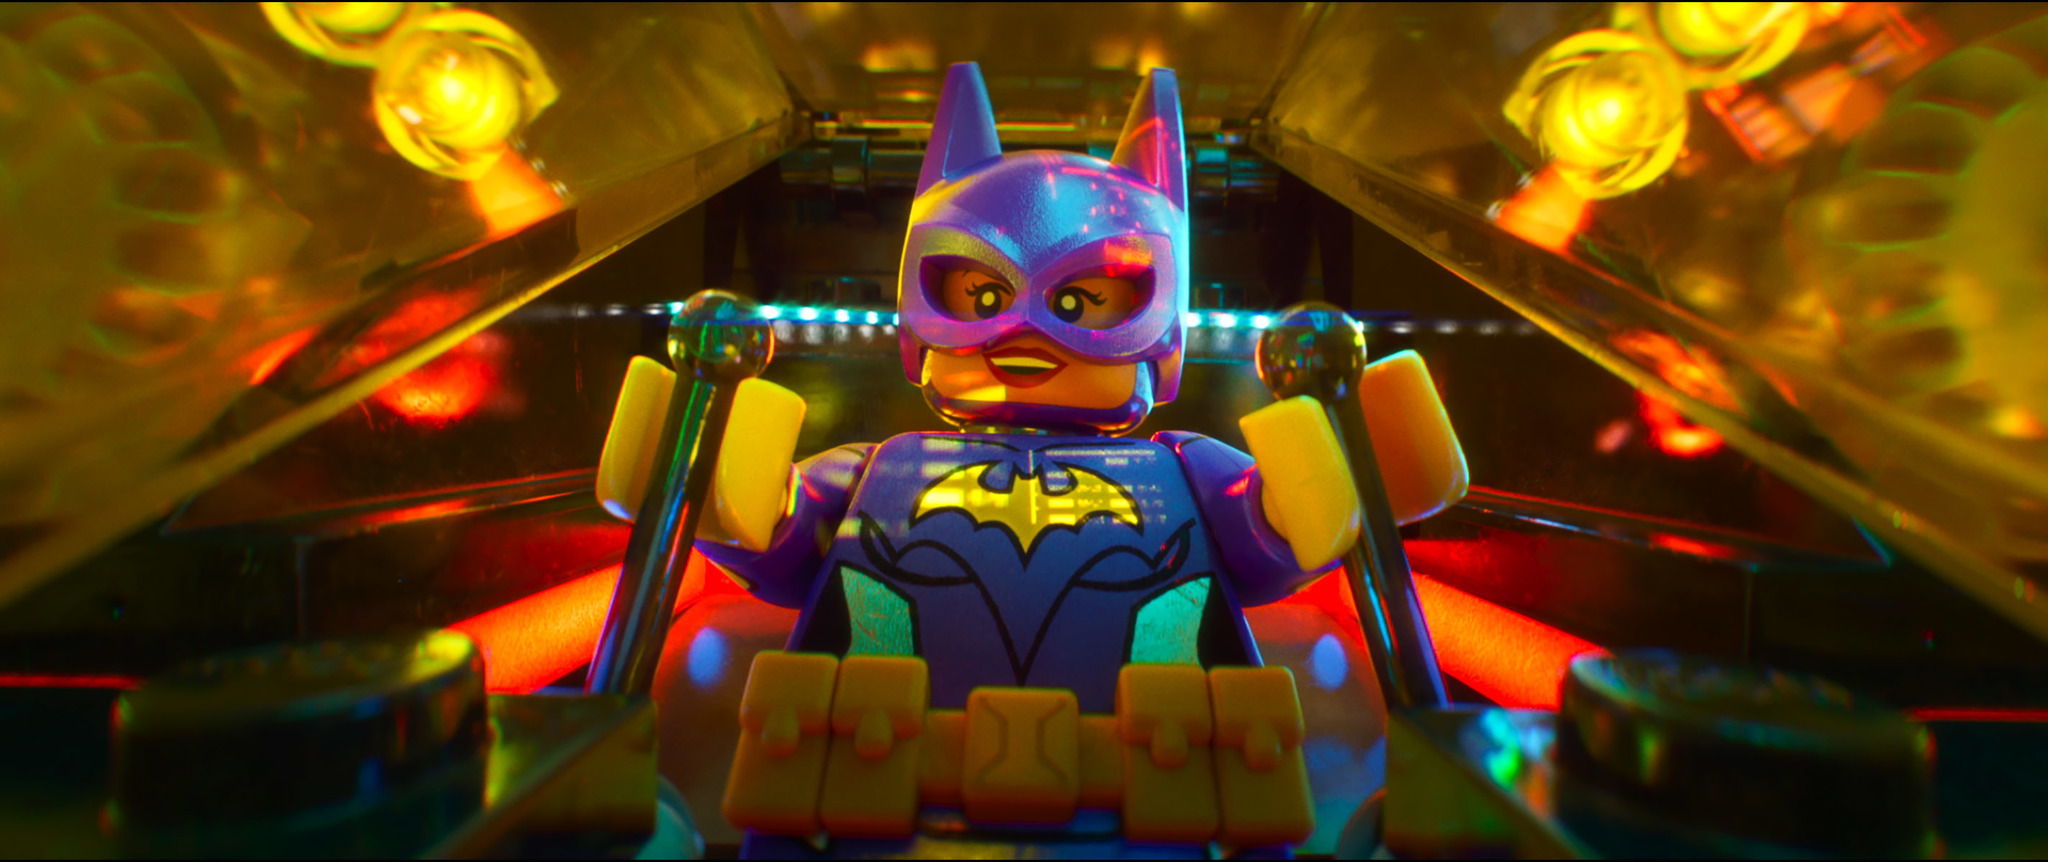 Фото - Лего Фильм: Бэтмен: 2048x862 / 414 Кб